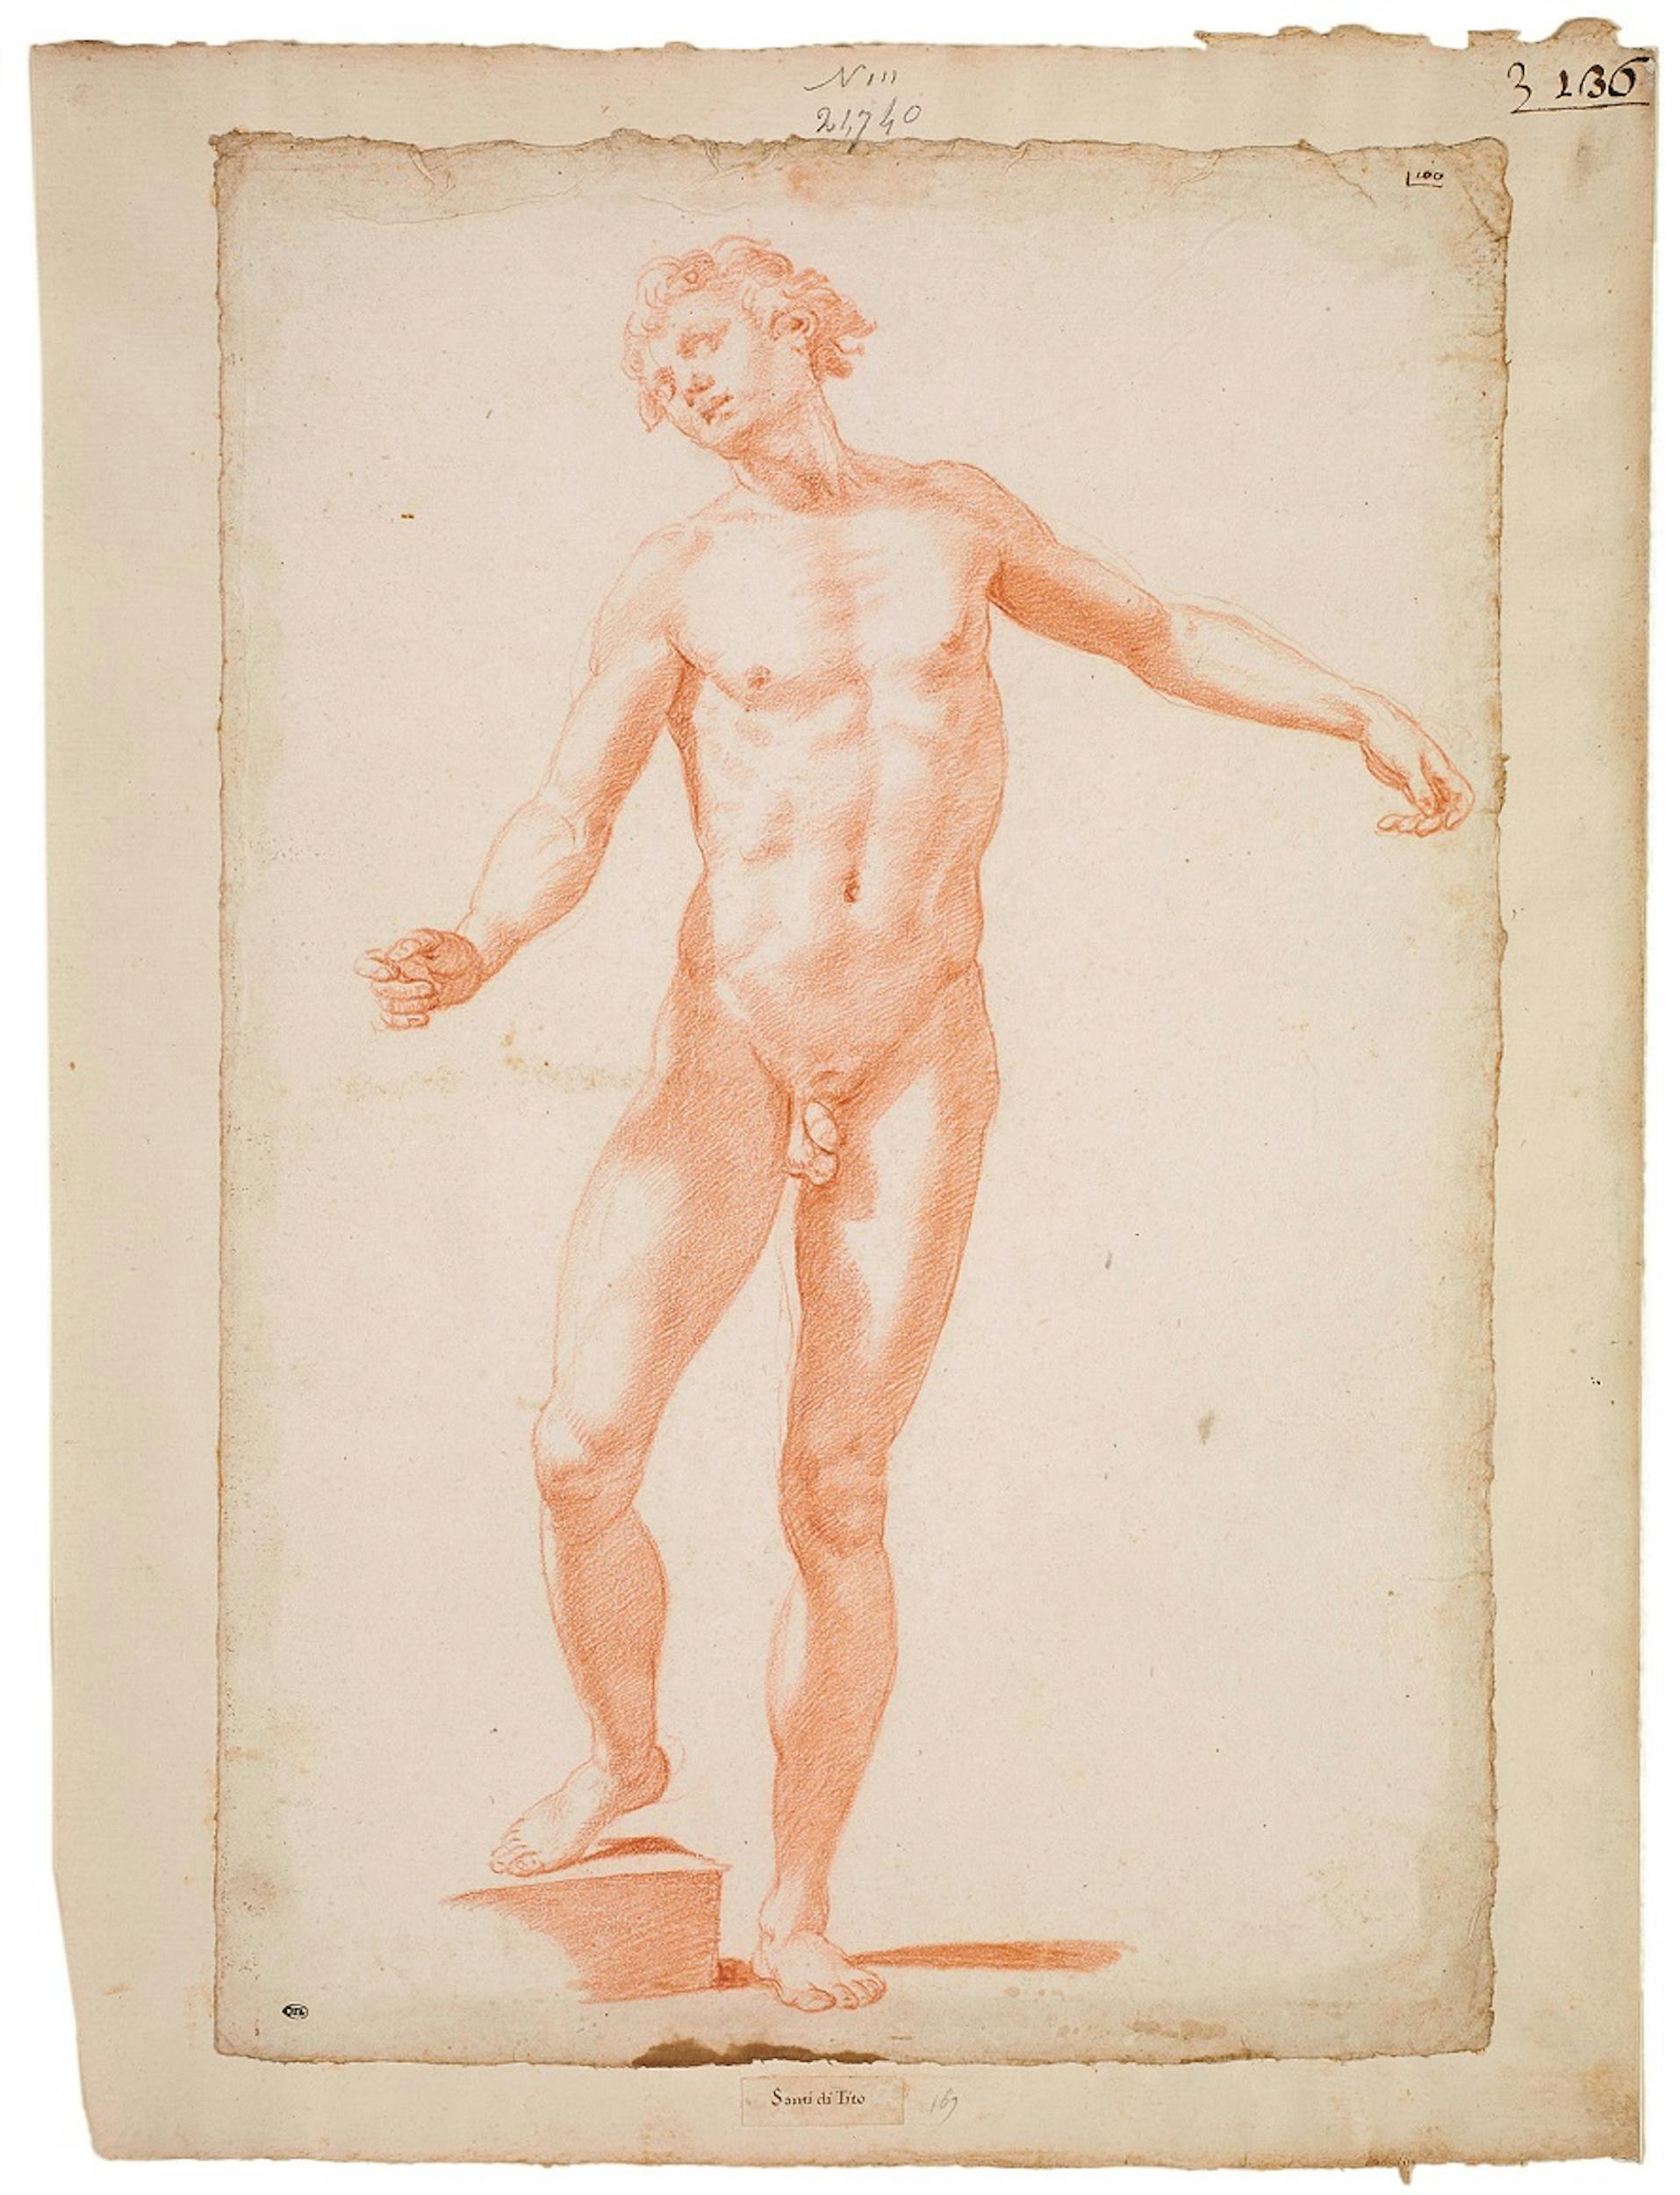 Santi di Tito (Sansepolcro 1536-Firenze 1603) Studio di nudo in piedi voltato verso sinistra 1570-1580 circa Matita rossa Parigi, Musée du Louvre, Département des Arts Graphiques 